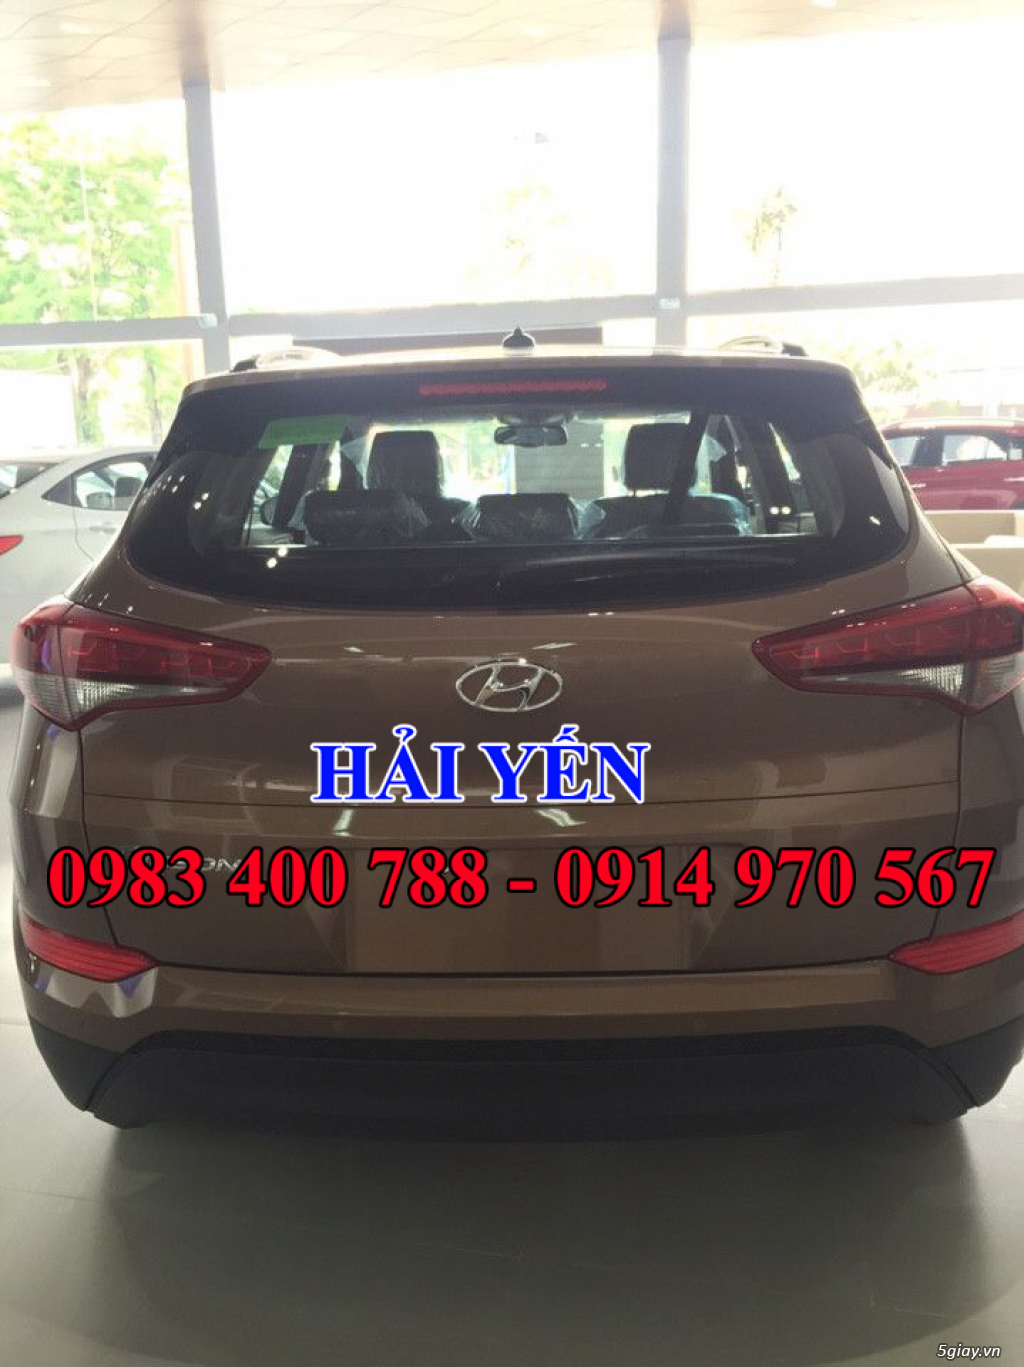 Hyundai Đà Nẵng, giá xe Hyundai Tucson mới tại Đà Nẵng, bán xe Tucson 2016 Đà Nẵng - 2